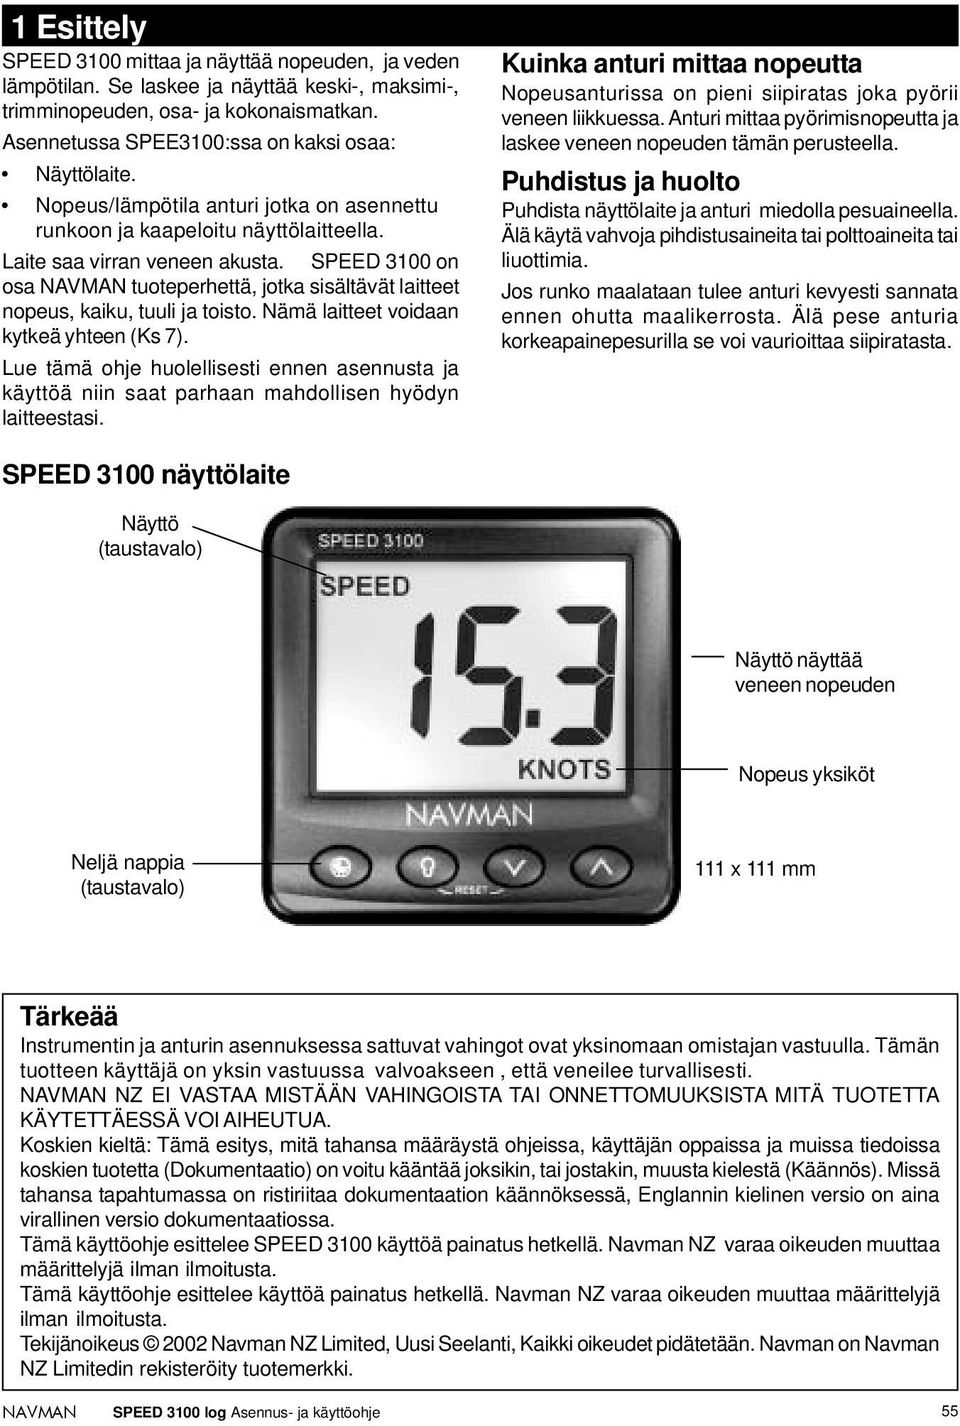 SPEED 3100 on osa tuoteperhettä, jotka sisältävät laitteet nopeus, kaiku, tuuli ja toisto. Nämä laitteet voidaan kytkeä yhteen (Ks 7).